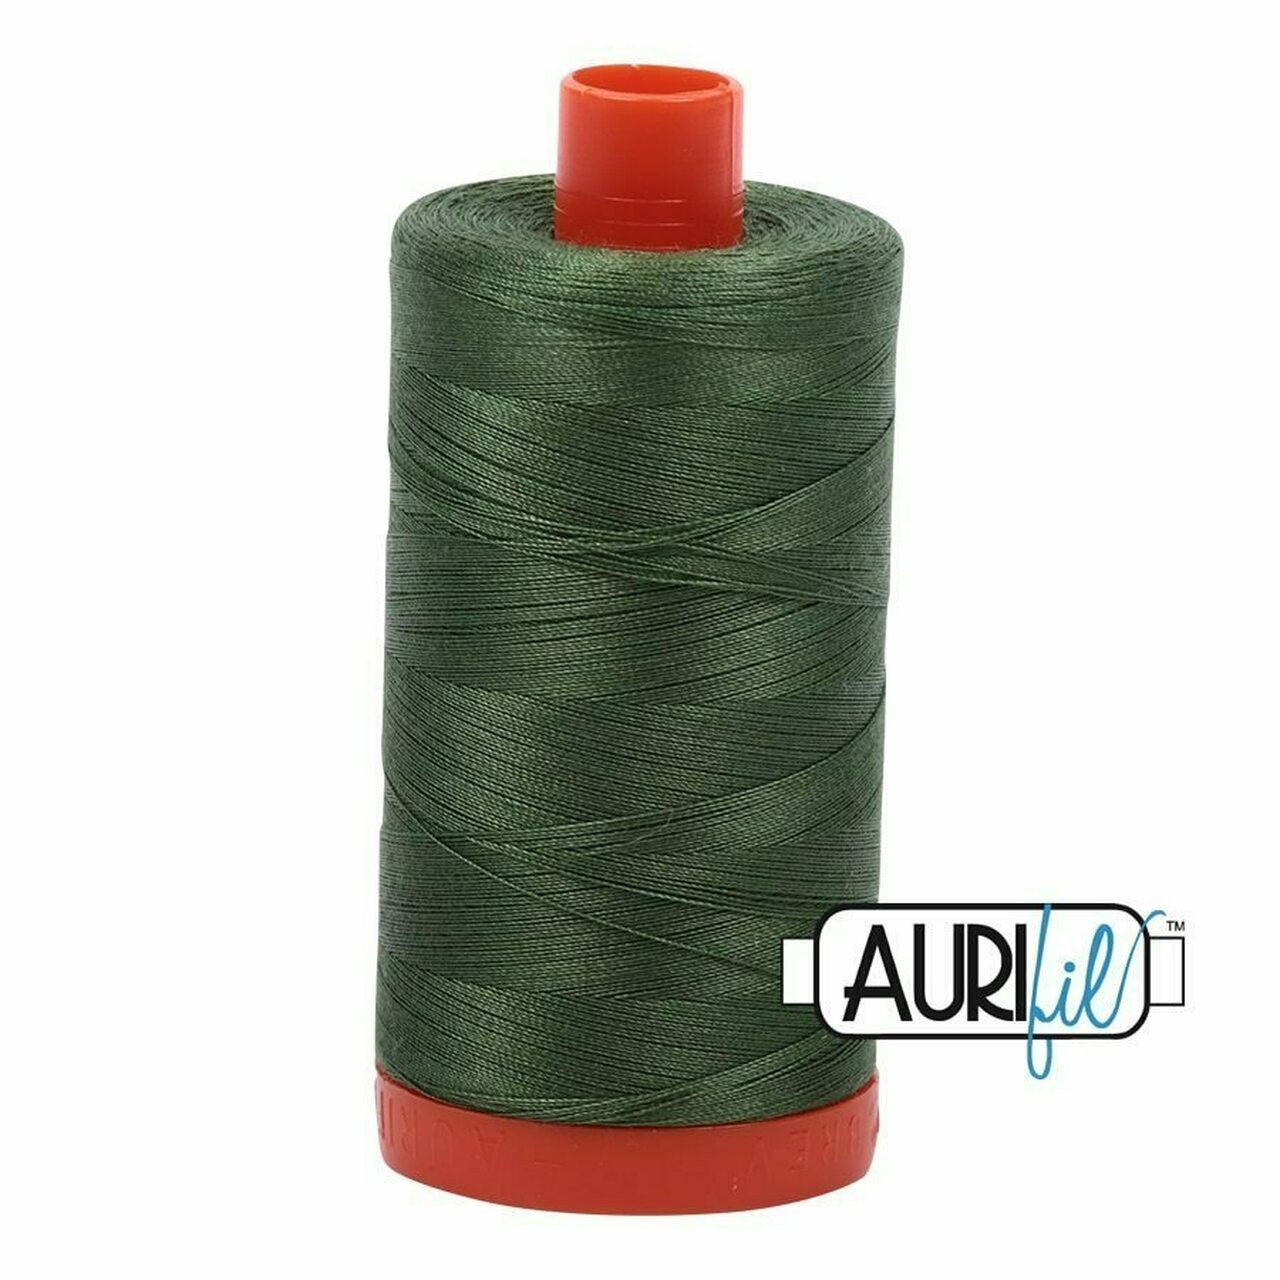 Aurifil 2890 - Very Dark Grass Green